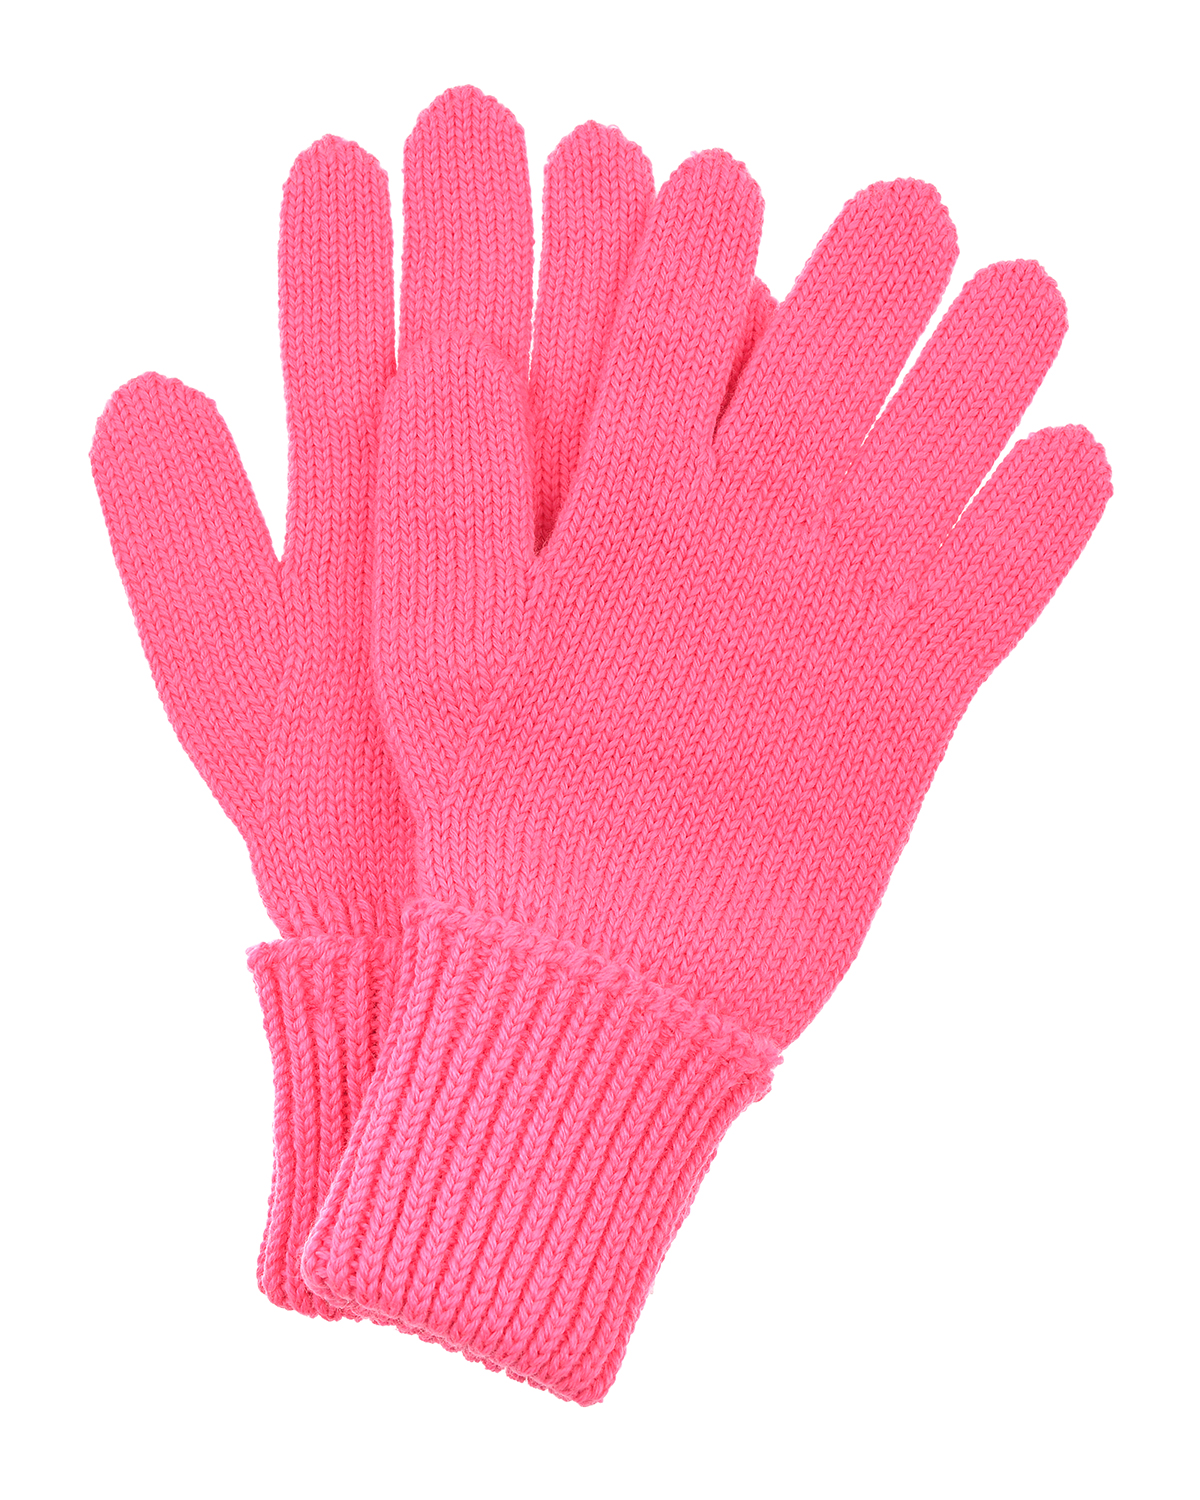 Шерстяные перчатки цвета фуксии Chobi детские, размер 4